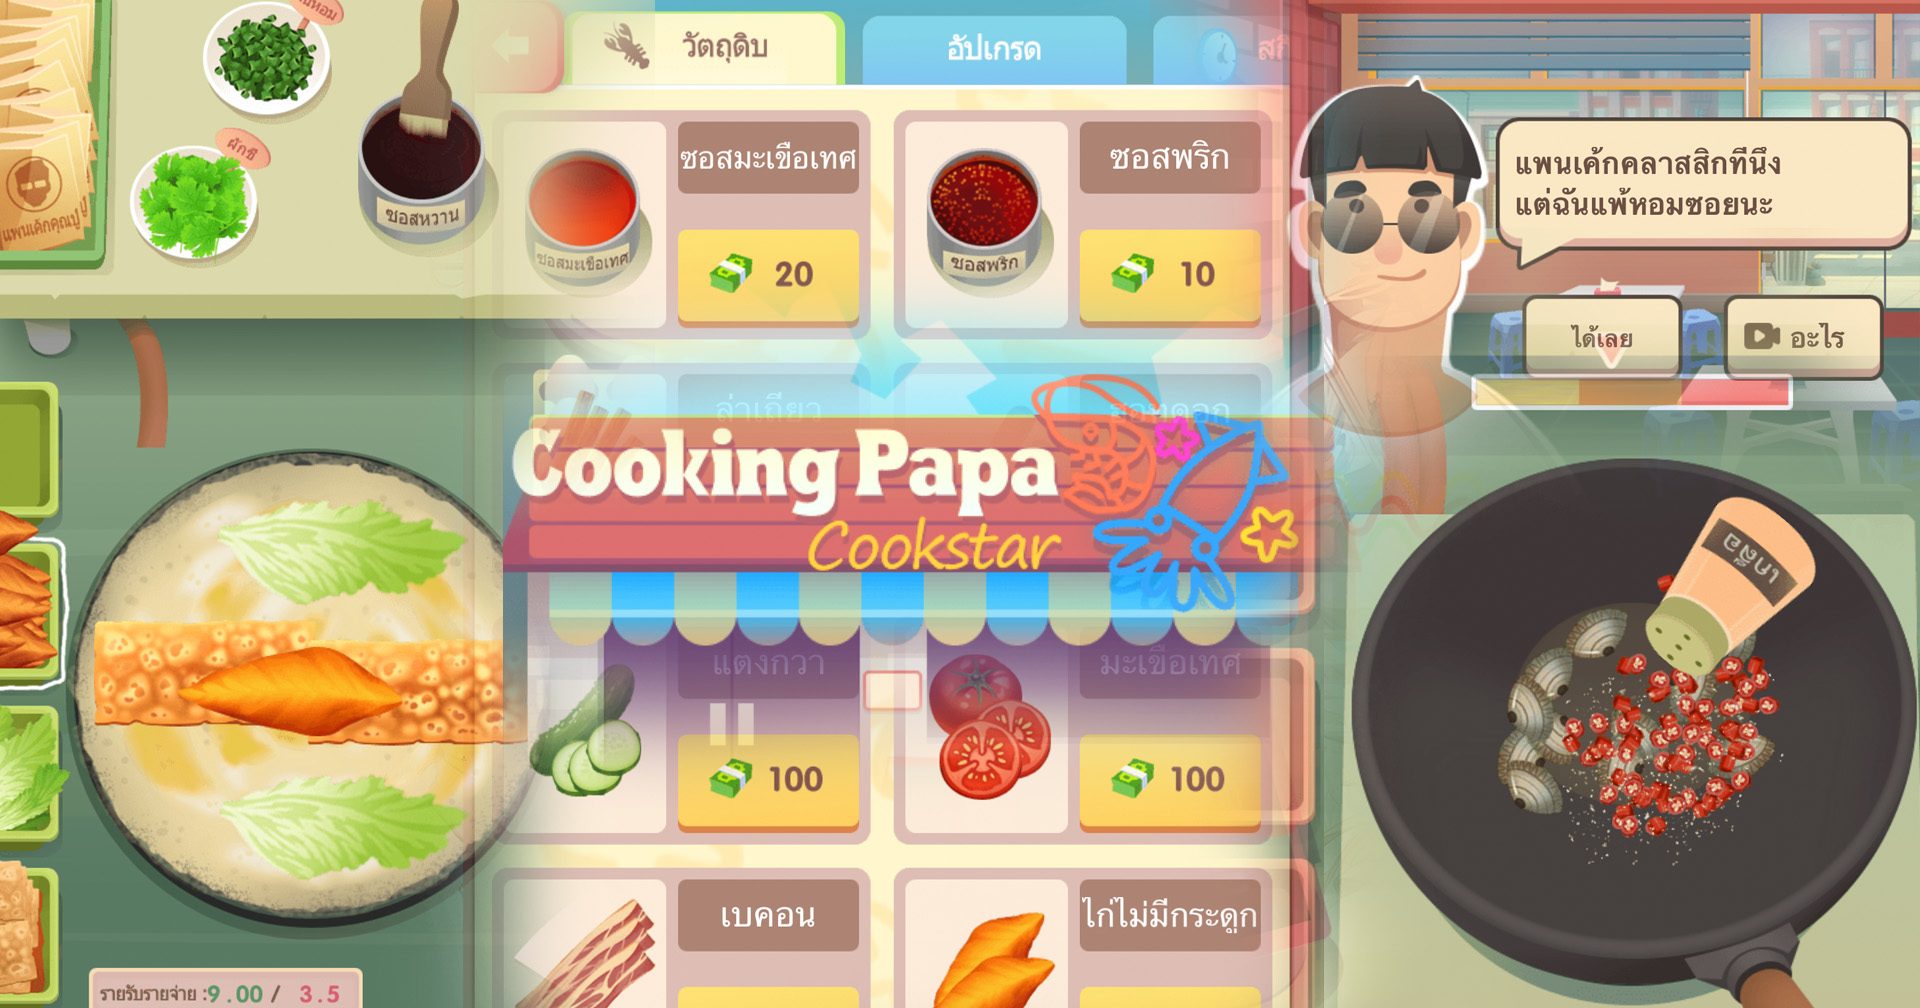 [รีวิวเกม] Cooking Papa:Cookstar เกมร้านอาหารเหมือนเดิม เพิ่มเติมคือได้ปรุงเอง!